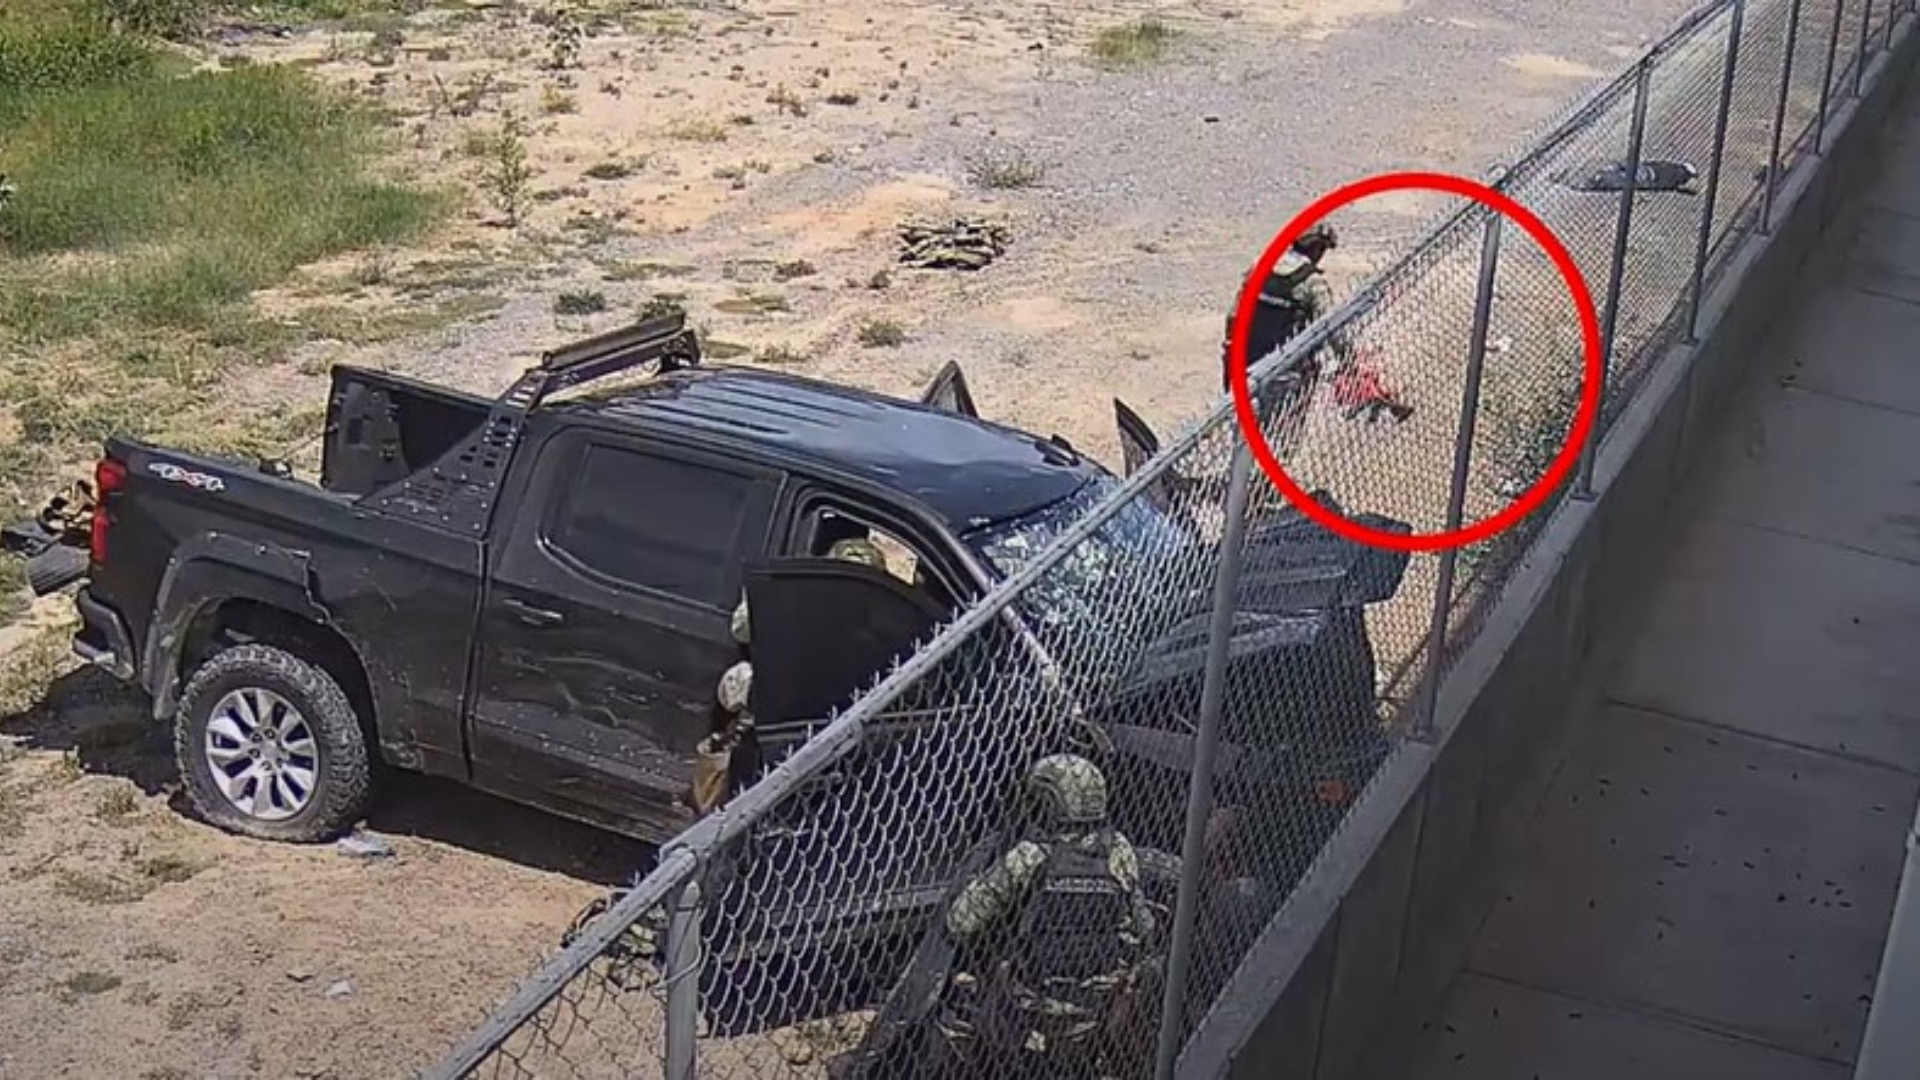 Momento en que uno de los militares colocó armas junto a los cuerpos usando un trapo. (Captura de pantalla)